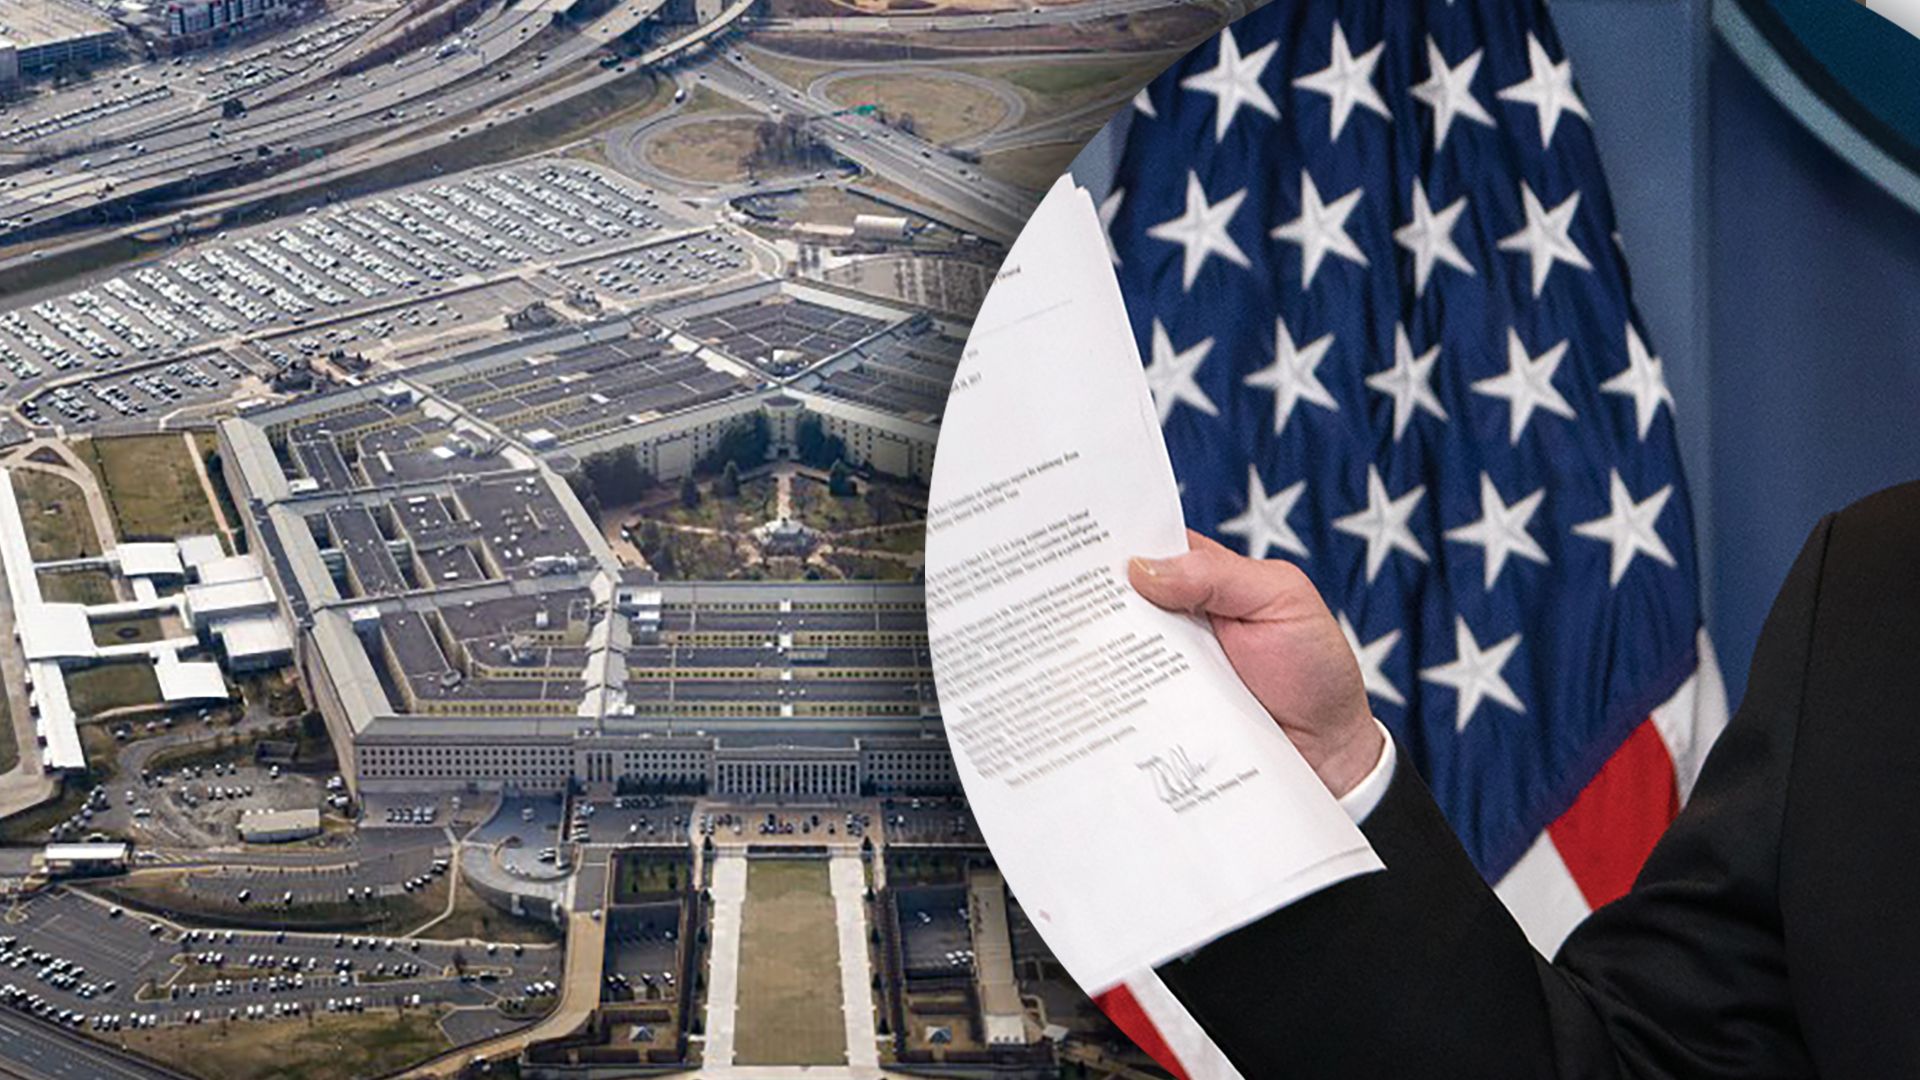 "Утечка" секретных документов в США могла произойти за пределами Пентагона, – Fox News - 24 Канал